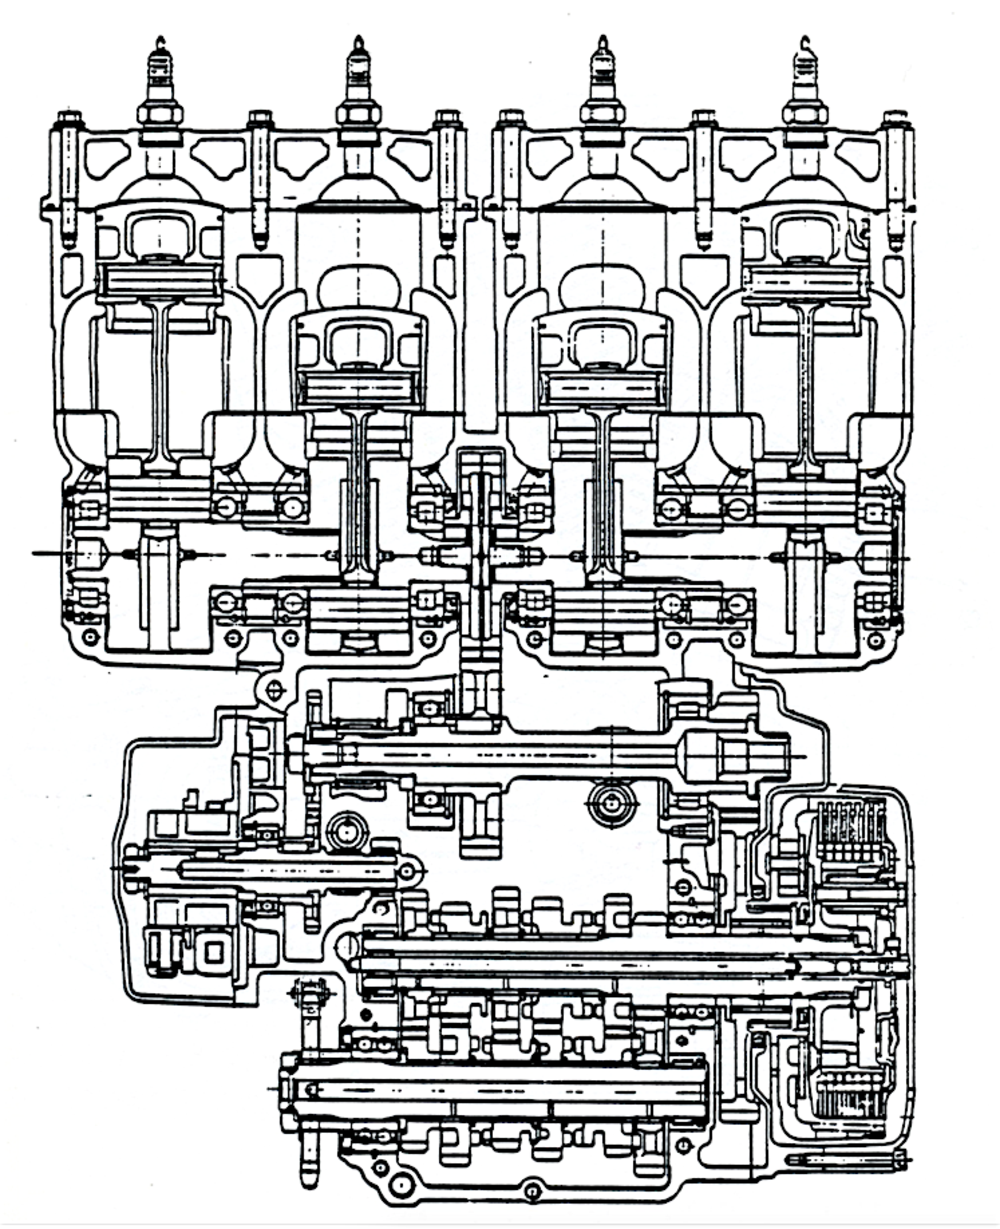 Questa sezione del motore Yamaha TZ 750 a quattro cilindri (largamente impiegato dai nostri piloti di punta) consente di osservare chiaramente le principali caratteristiche costruttive come i due alberi a gomiti di tipo composito in presa con l&rsquo;ingranaggio dell&rsquo;albero ausiliario, collocato centralmente, e gli otto cuscinetti di banco